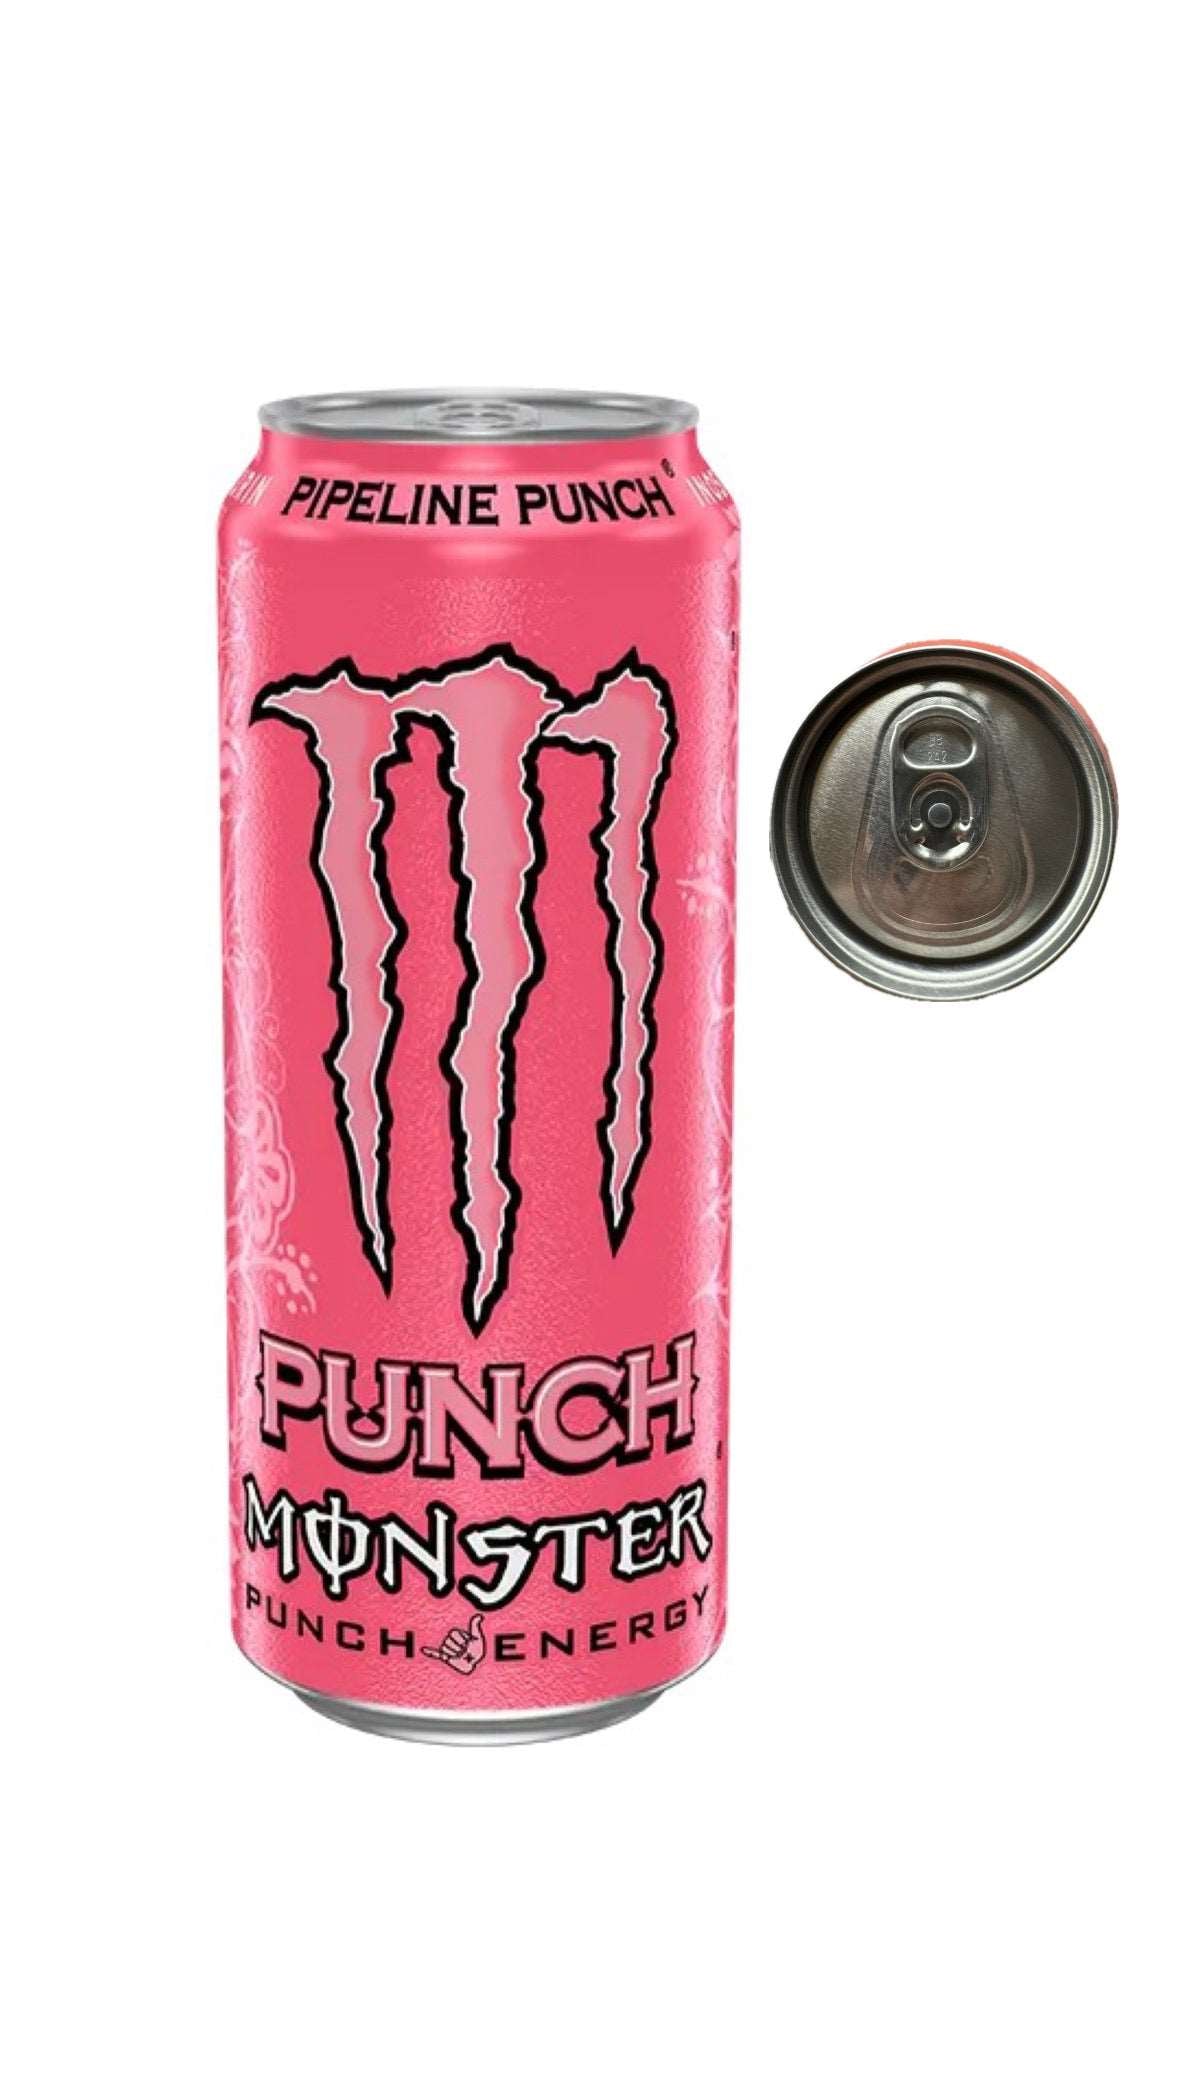 Monster Energy Punch Pipeline PL sku: 0321